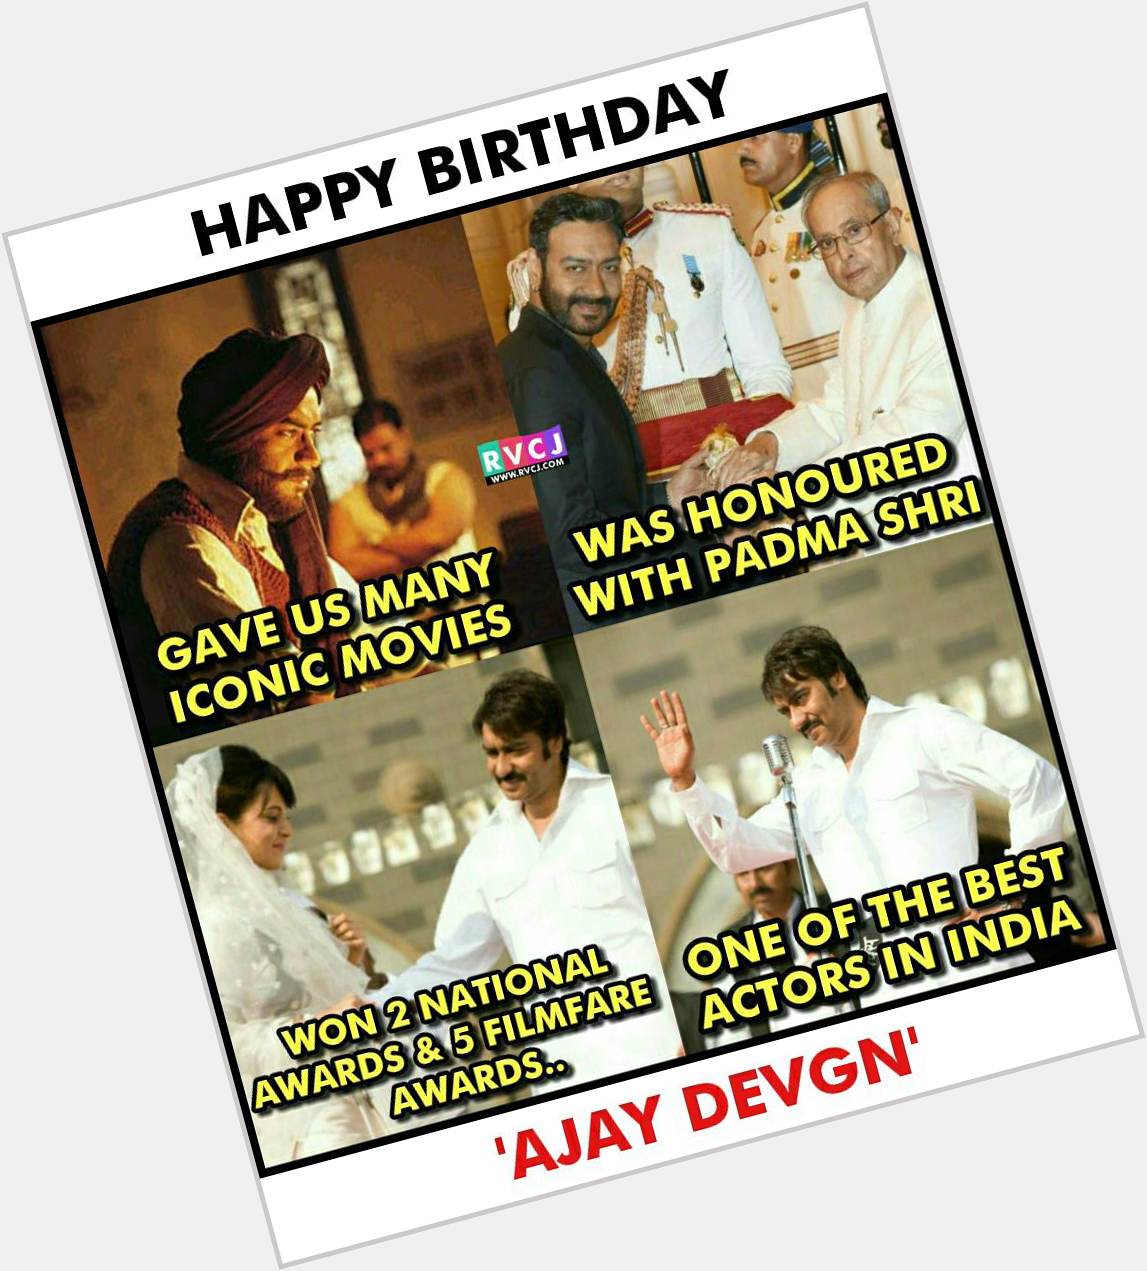 Happy Birthday Ajay Devgn 